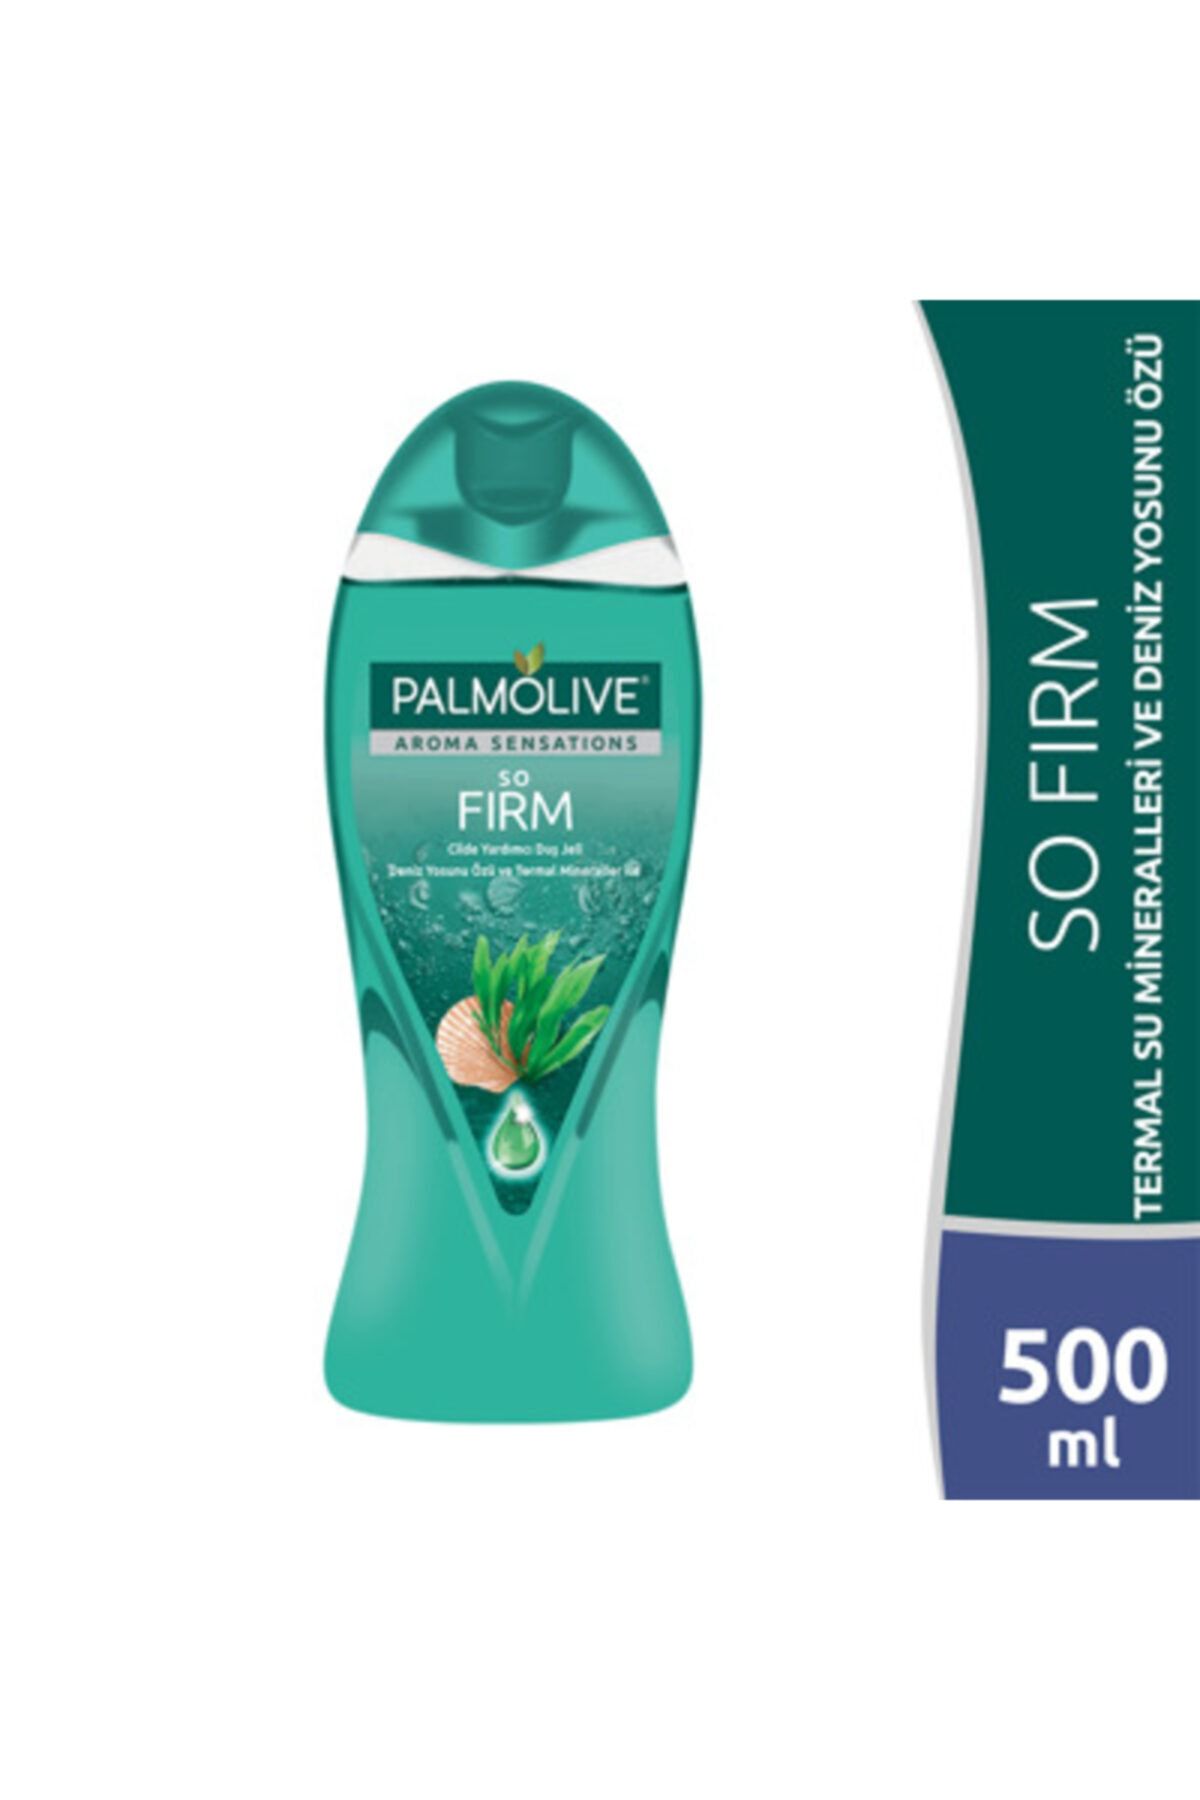 Palmolive Marka: Aroma Sensations So Firm Cilde Yardımcı Duş Jeli, 500 Ml Kategori: Duş Jeli